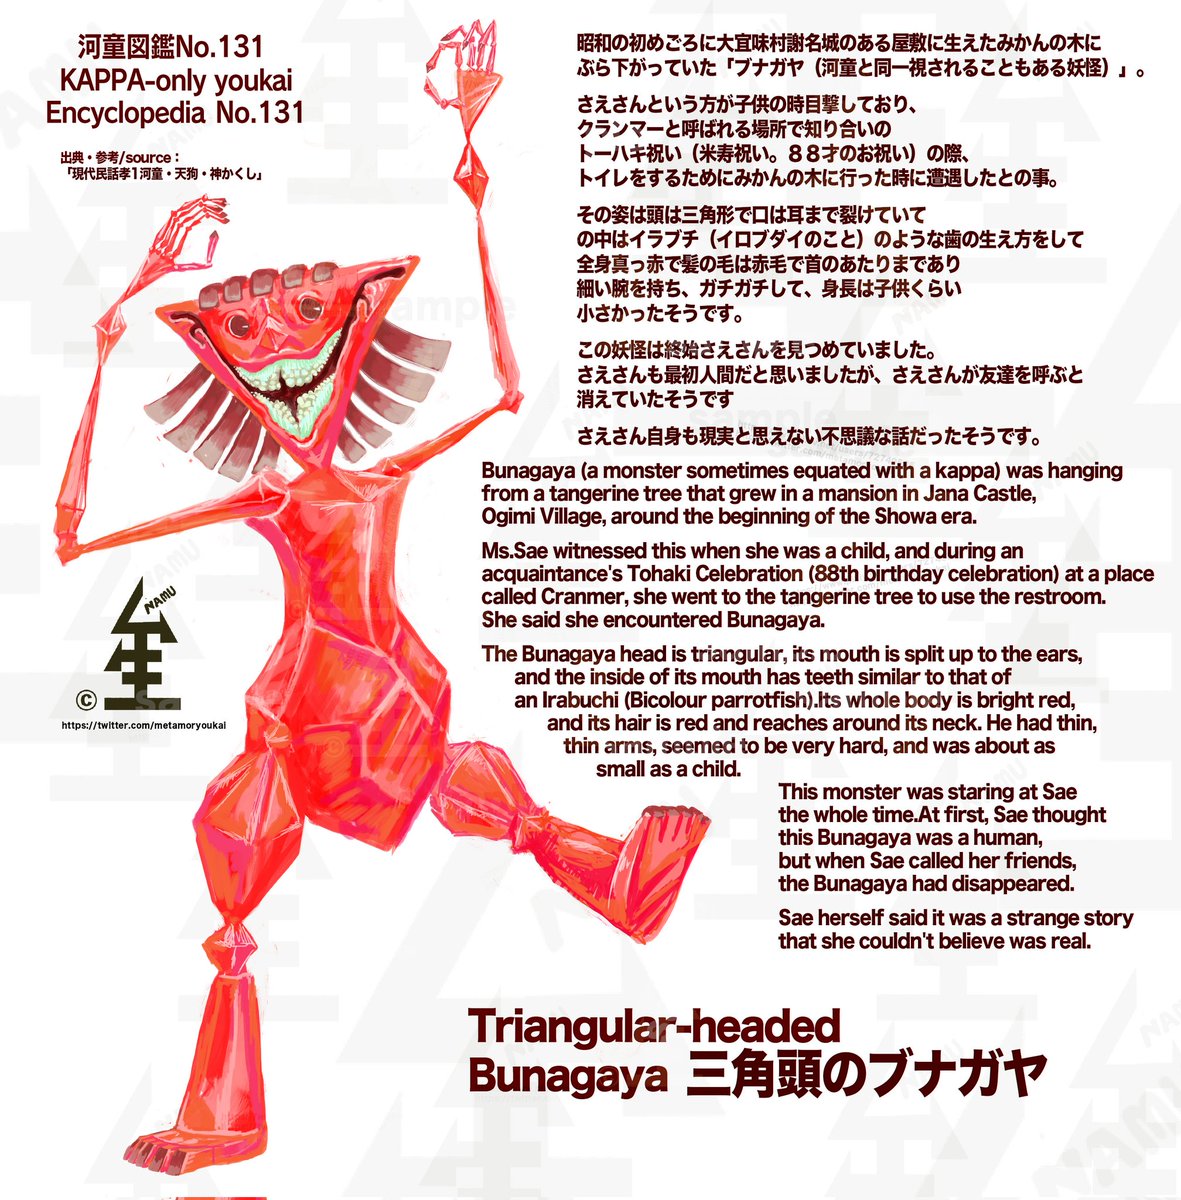 今日は三角頭のブナガヤです！

女子のお花摘み中に出てくる体の硬度が高そうな神出鬼没破廉恥ブナガヤ。

なにげに河童を100以上描いてて初のブナガヤかも。キジムナーとかも描いていきたいですね。

kappa-only youkai Encyclopedia
No.131:Triangular-headed Bunagaya

#yokai    #JapaneseFolklore